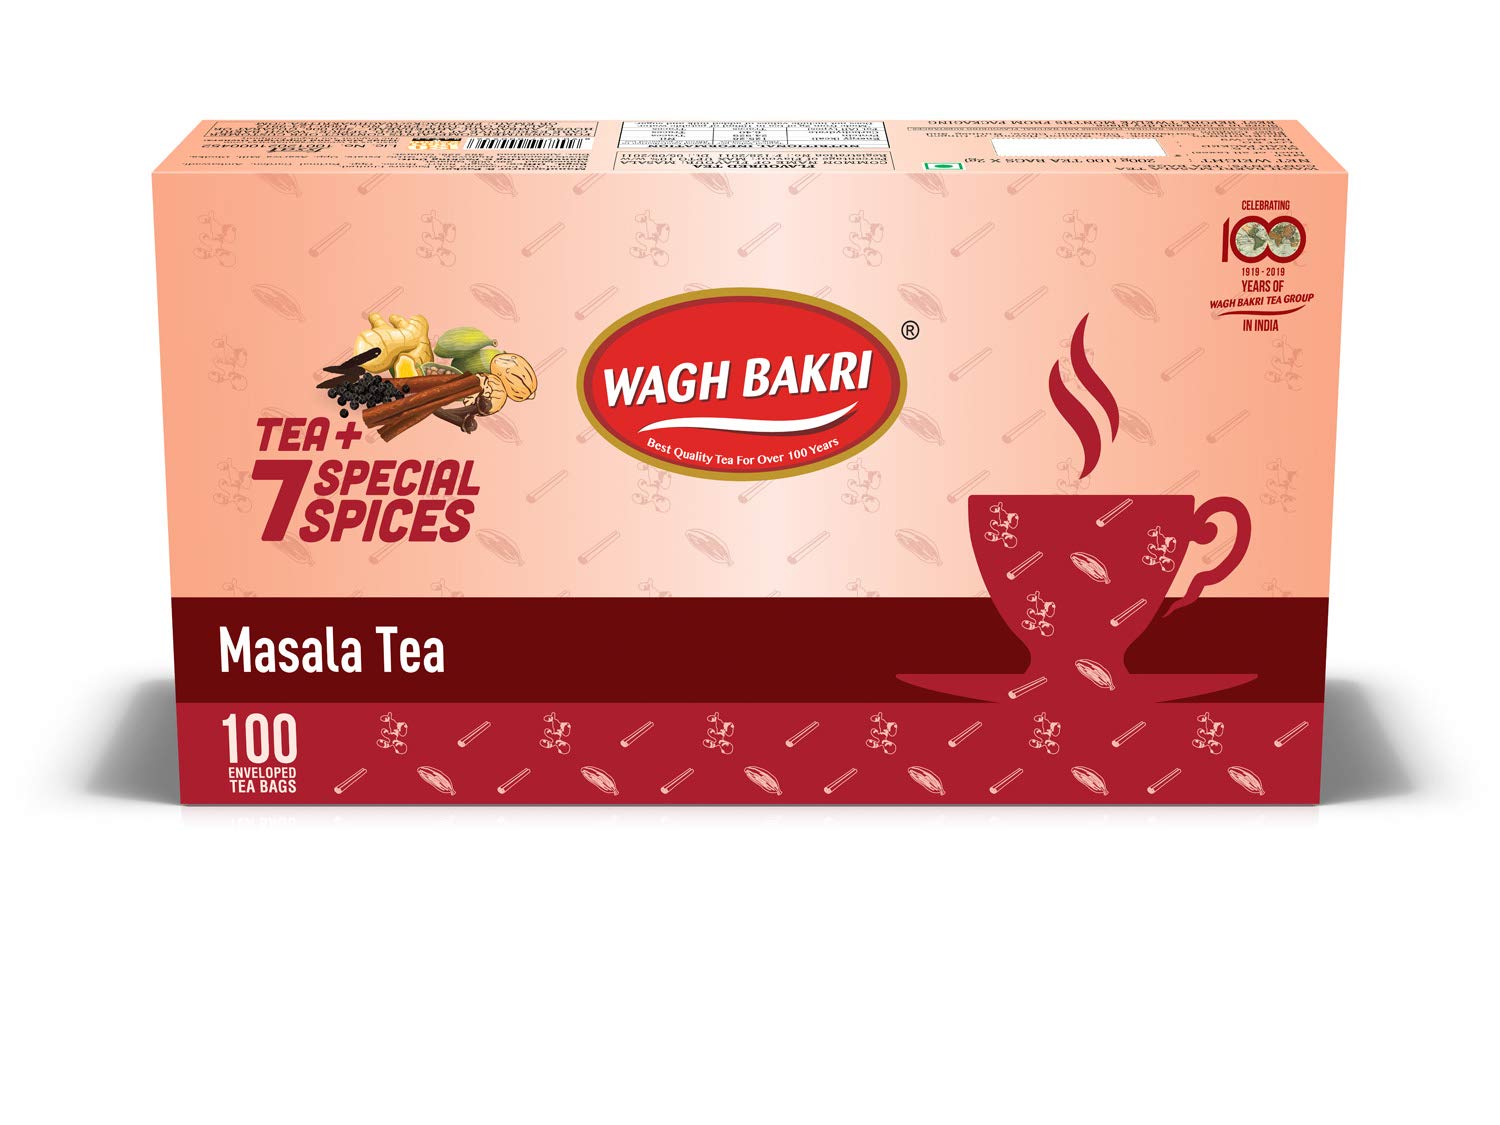 Wagh Bakri Masala Tea Image